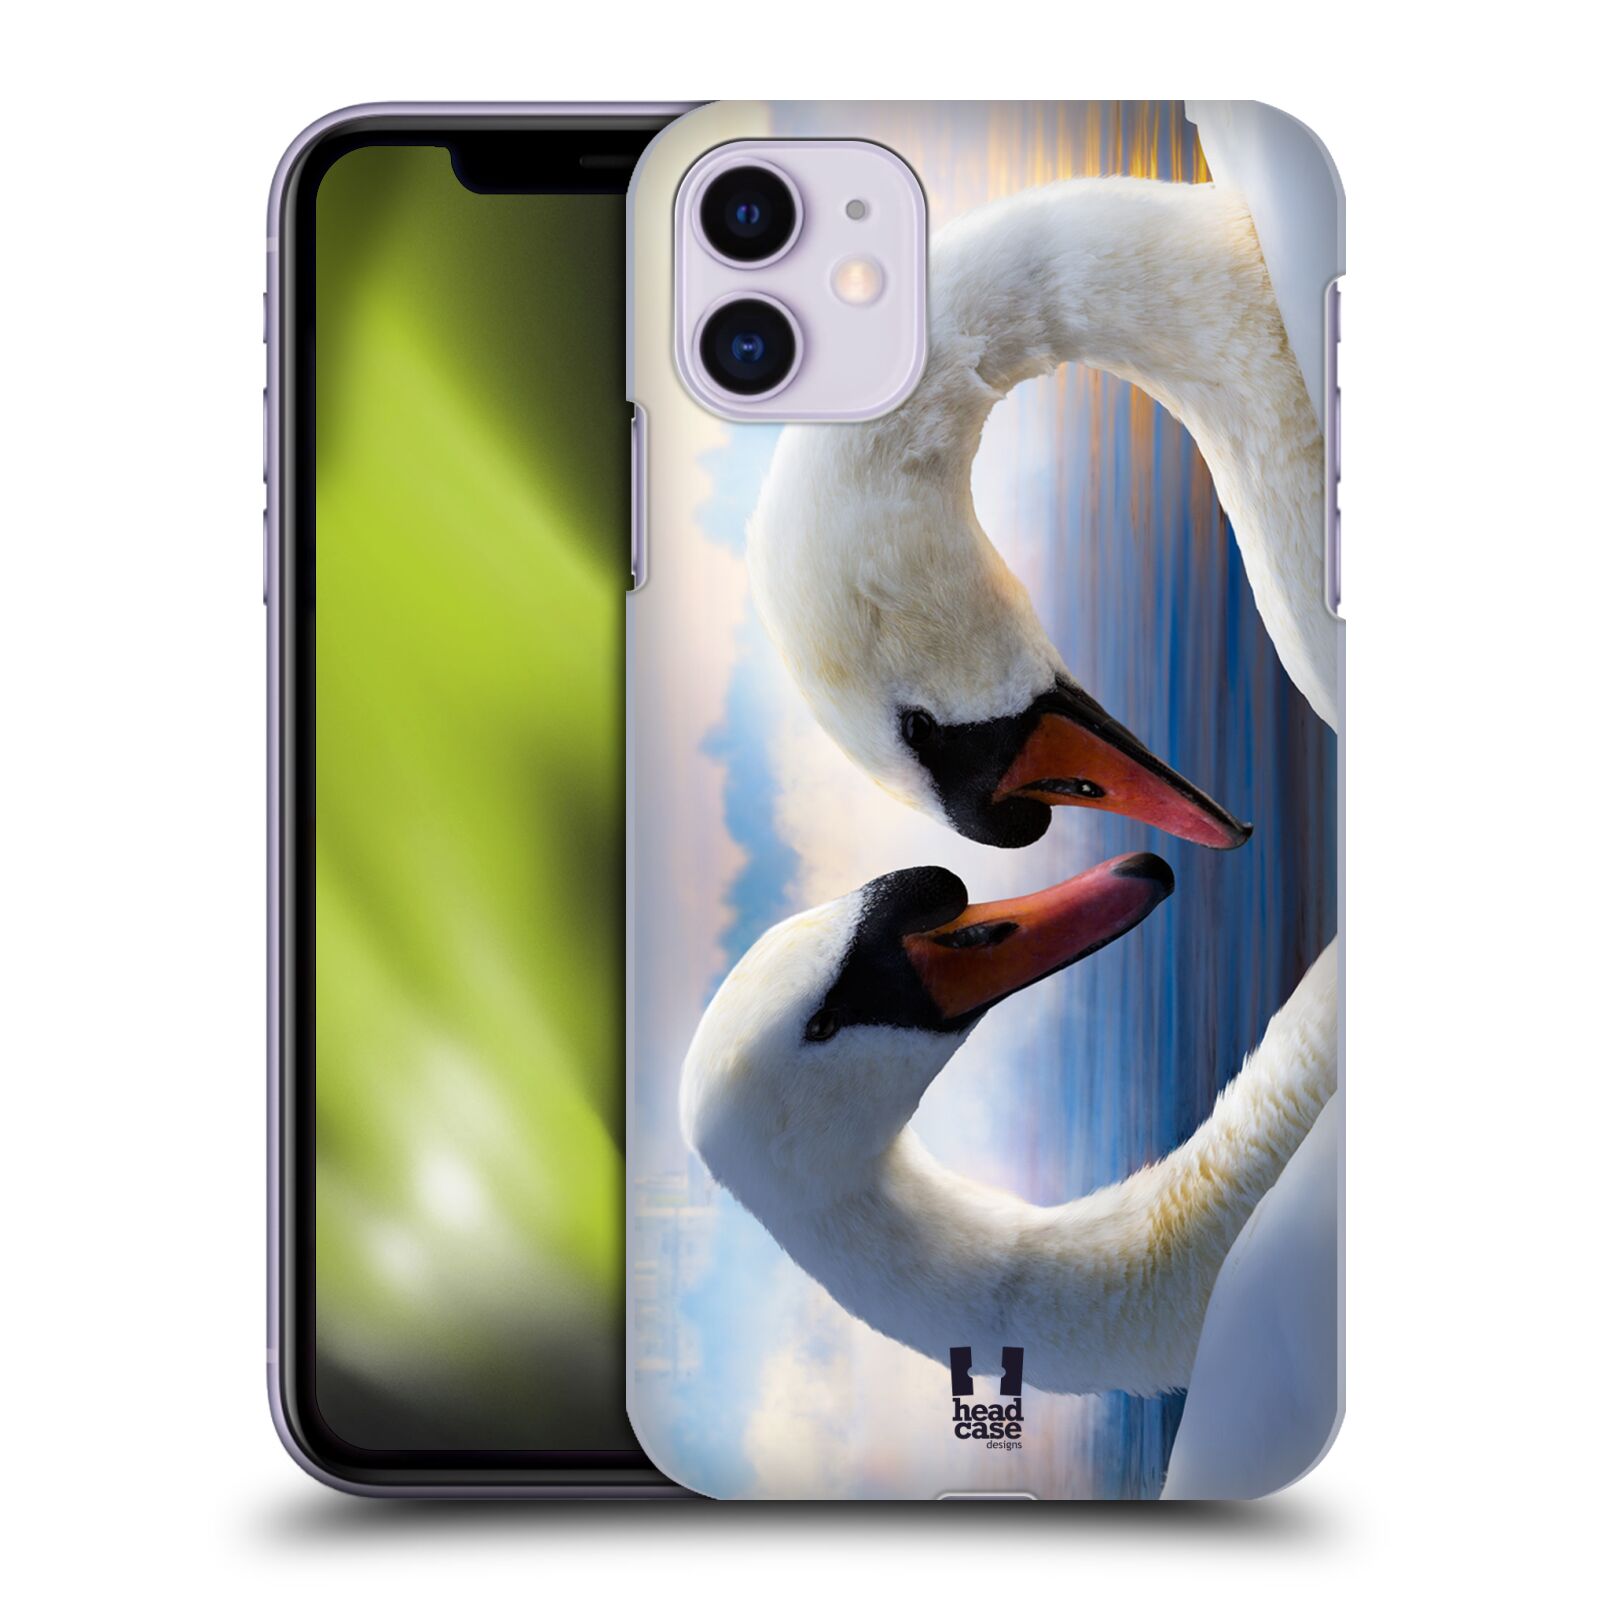 Pouzdro na mobil Apple Iphone 11 - HEAD CASE - vzor Divočina, Divoký život a zvířata foto ZAMILOVANÉ LABUTĚ, LÁSKA